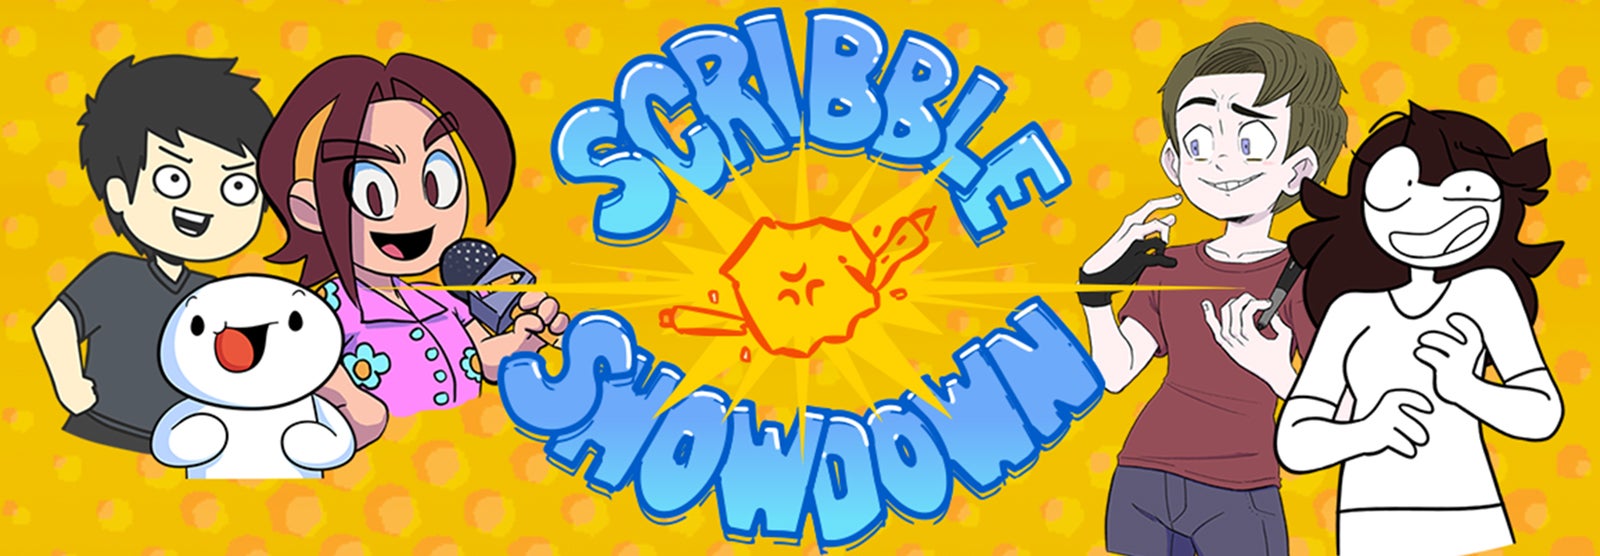 Scribble Showdown